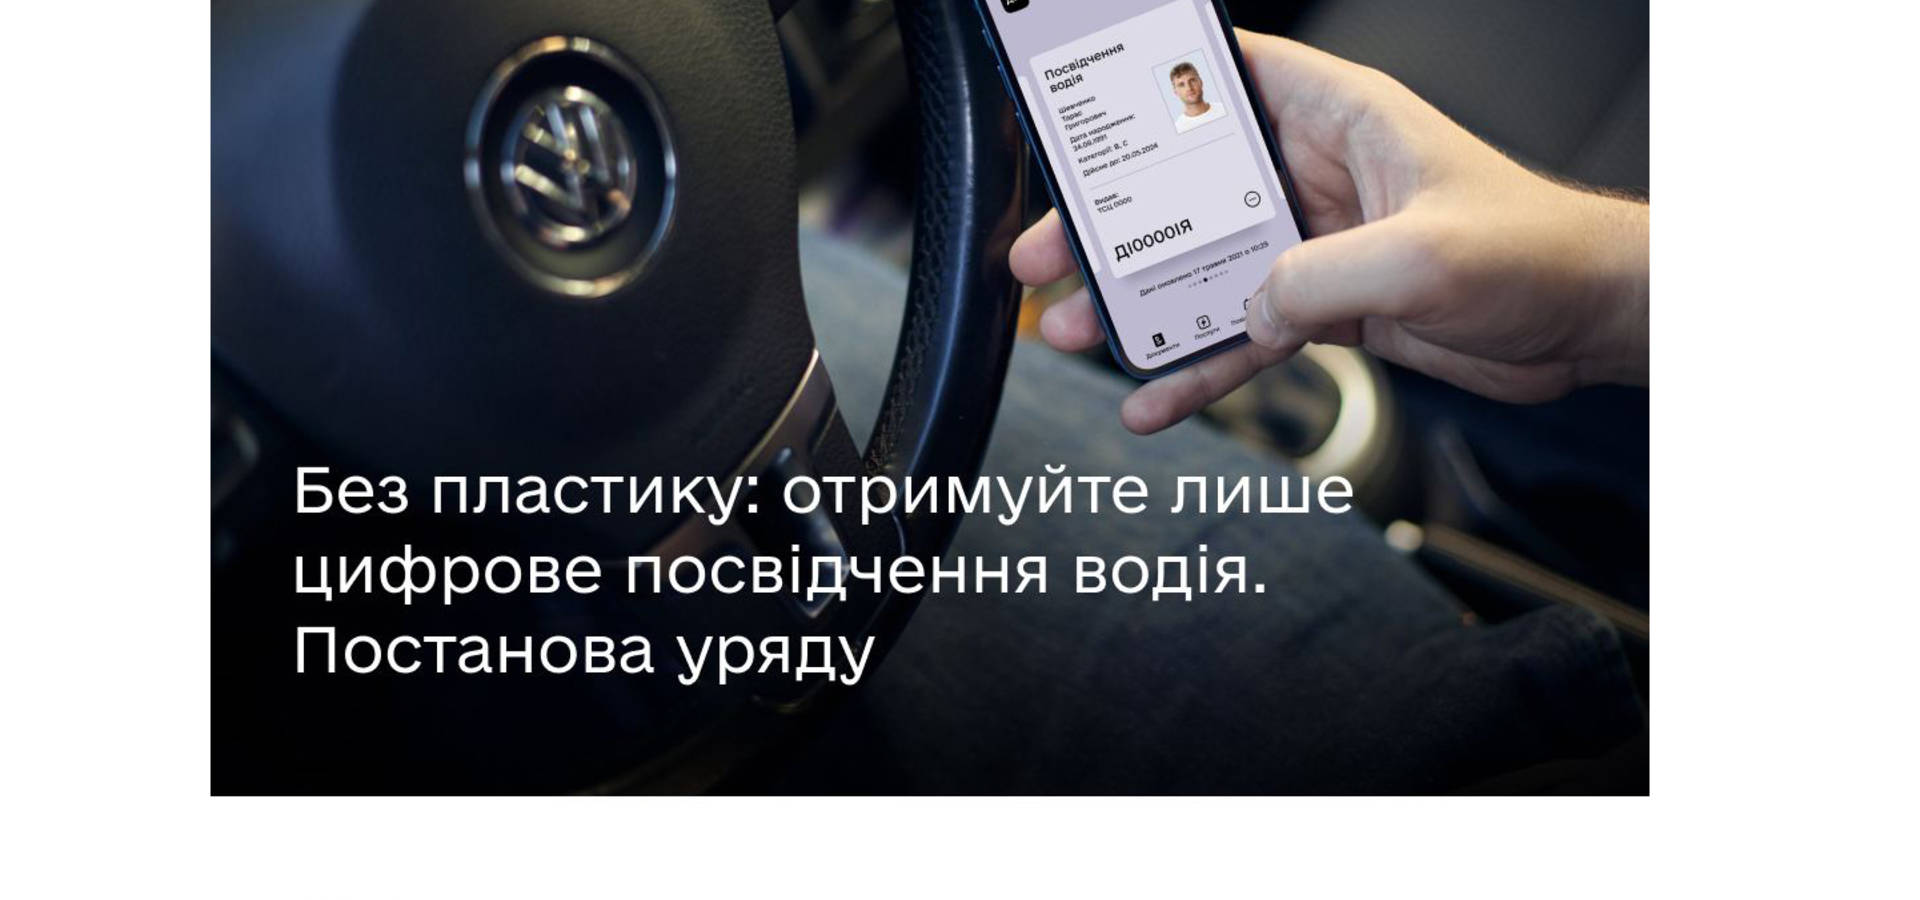 Українці зможуть використовувати лише електронне водійське посвідчення в Дії без пластикового аналога